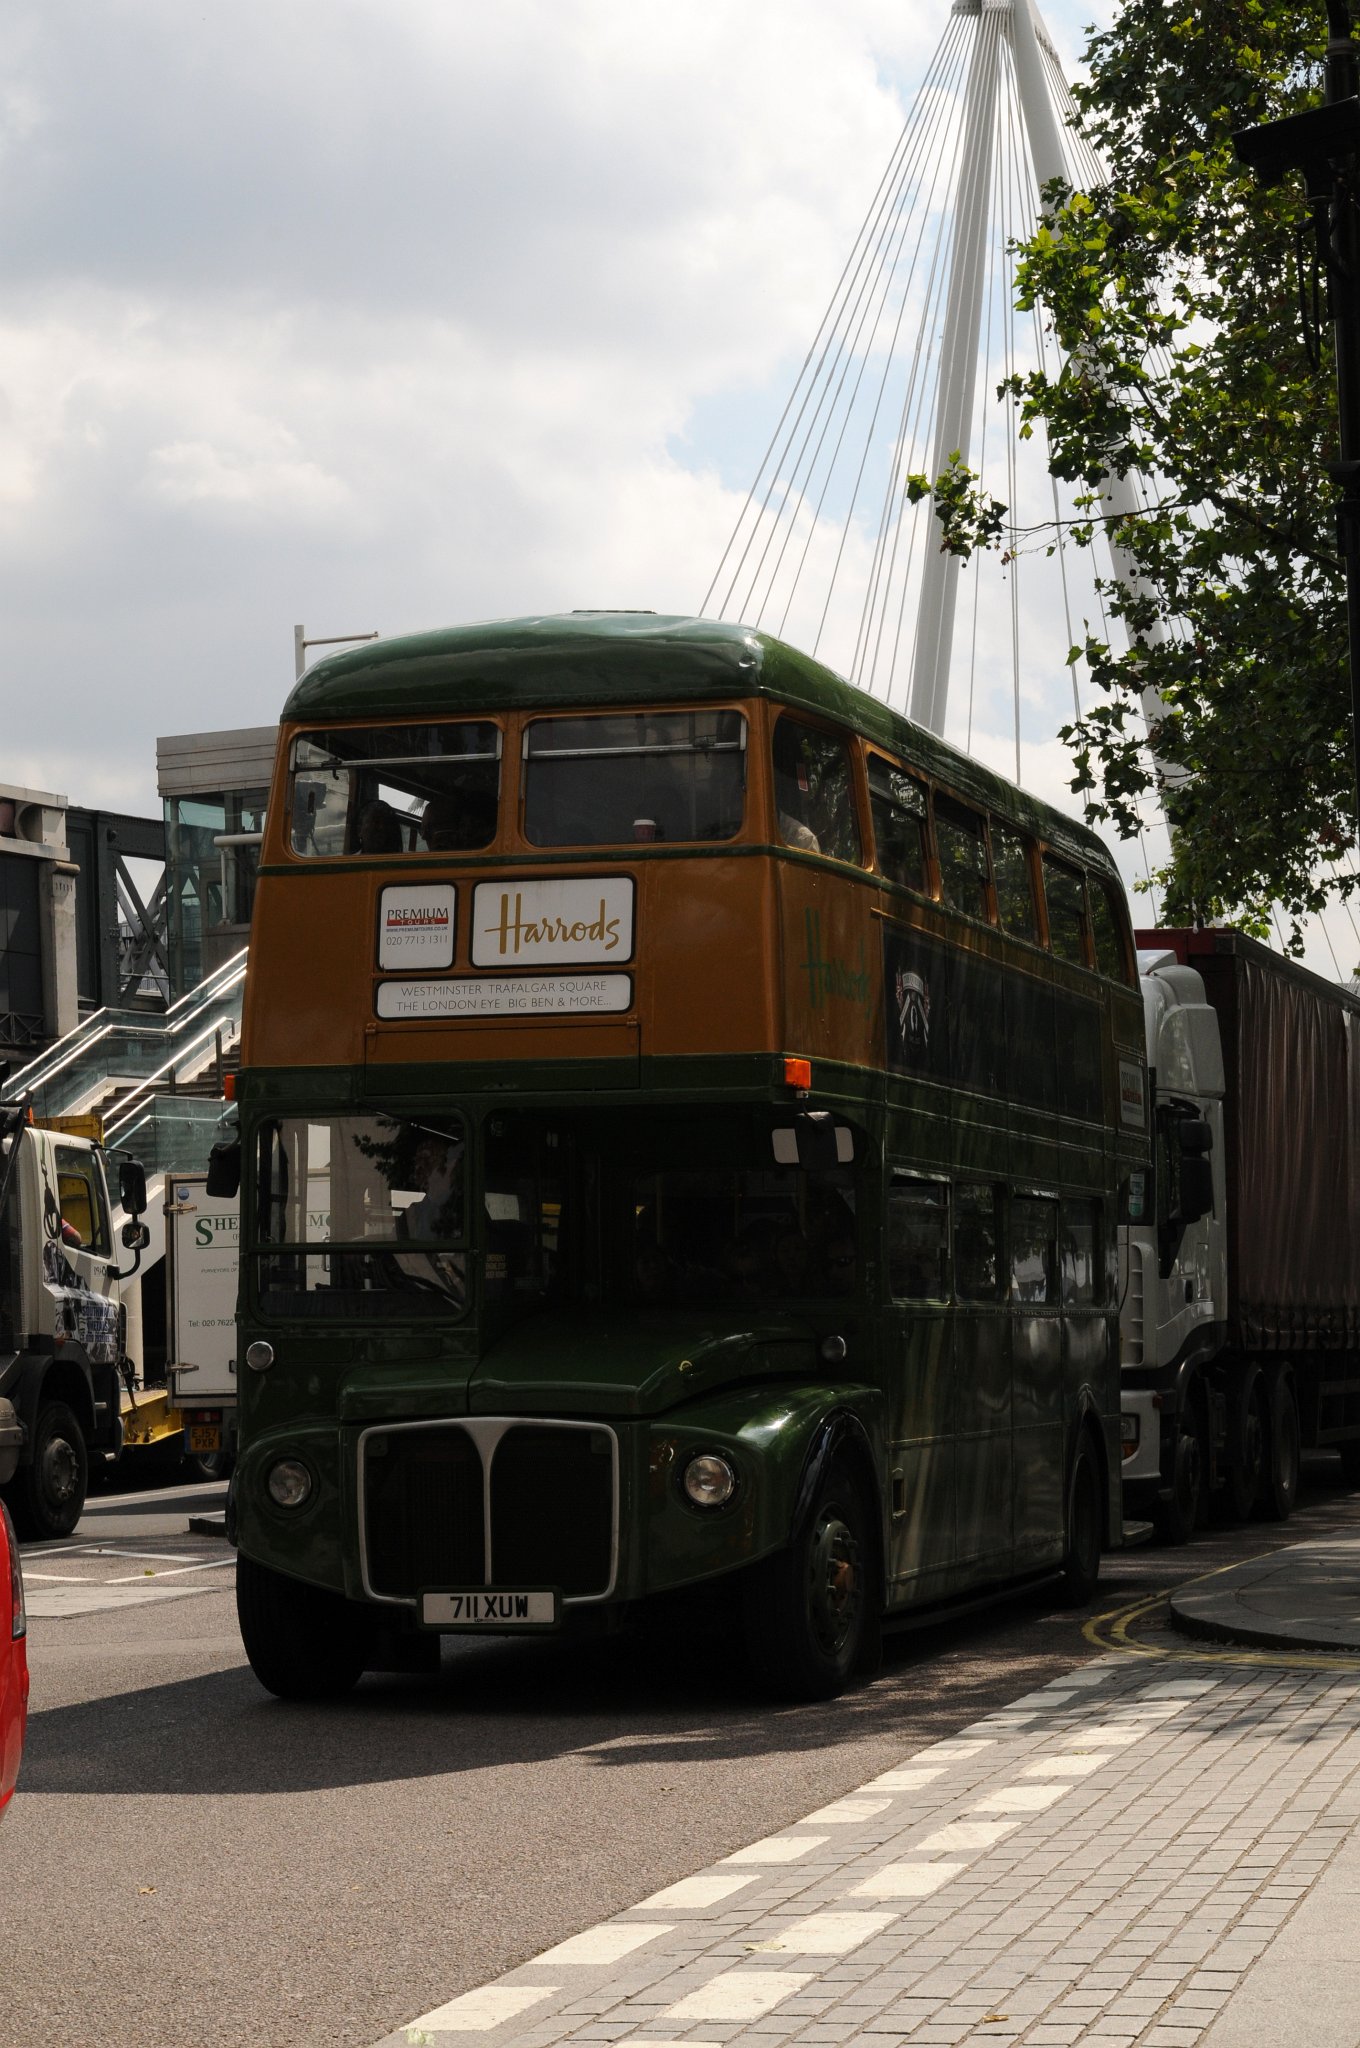 DSC_3859_2.jpg - Poschoďové autobusy s širokým nástupním prostorem – doubledeckery jsou již vyřazeny z provozu. Tento model jezdí s reklamou na jeden z nejluxusnějších a nejproslulejších obchodních domů na světě Harrods, který se nachází těsně pod Hyde Parkem v centru Londýna.